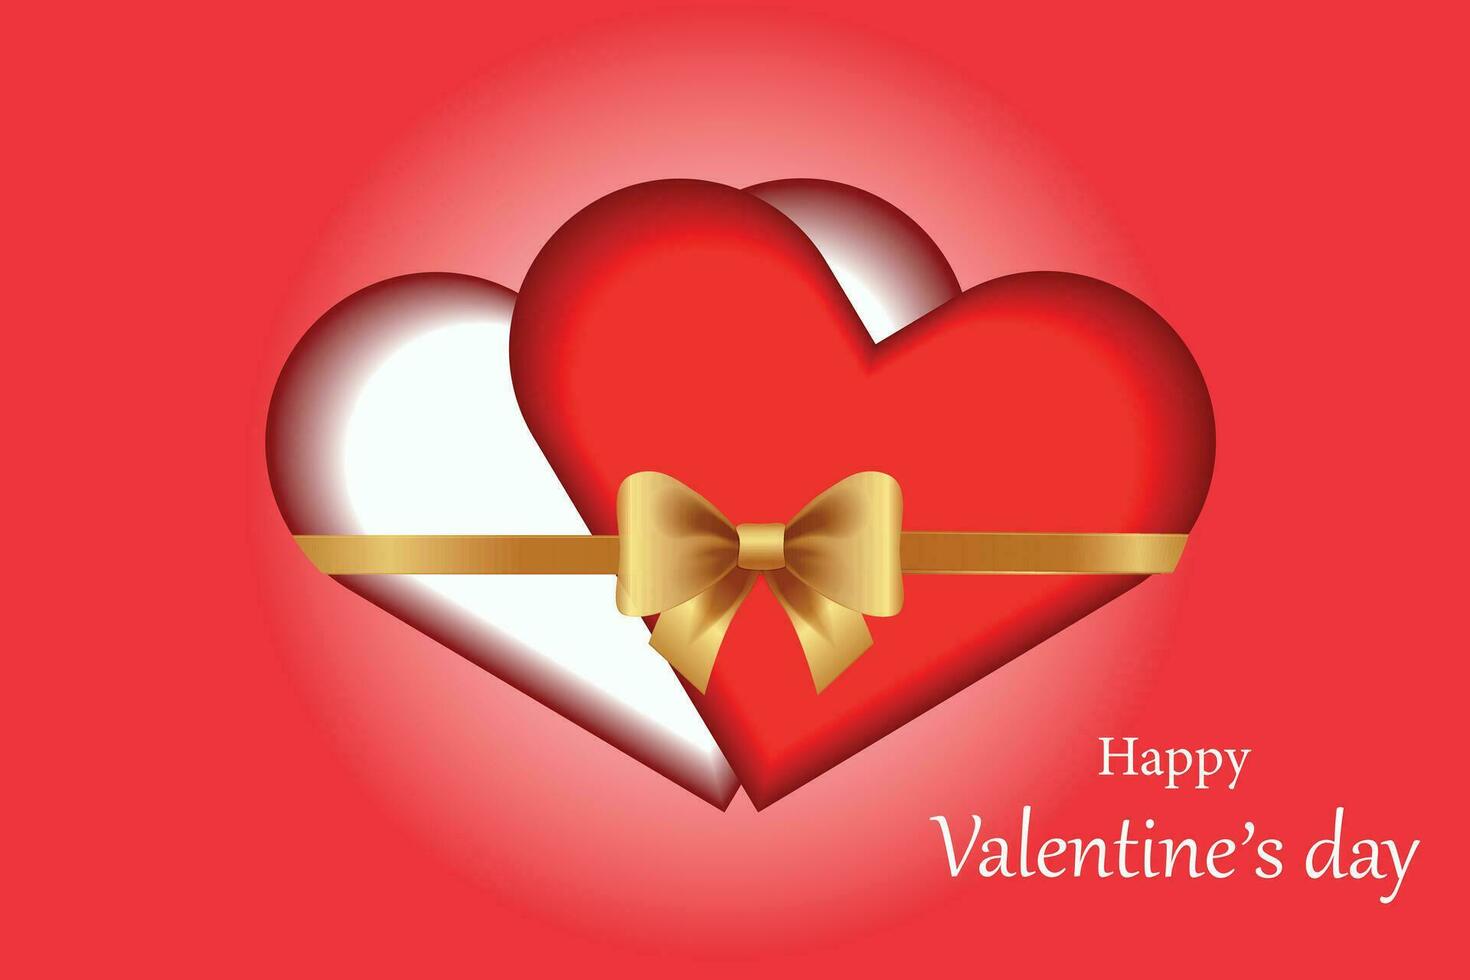 geliefden harten gebonden met goud lint, romantisch illustratie.valentijnsdag dag concept. vector illustratie.